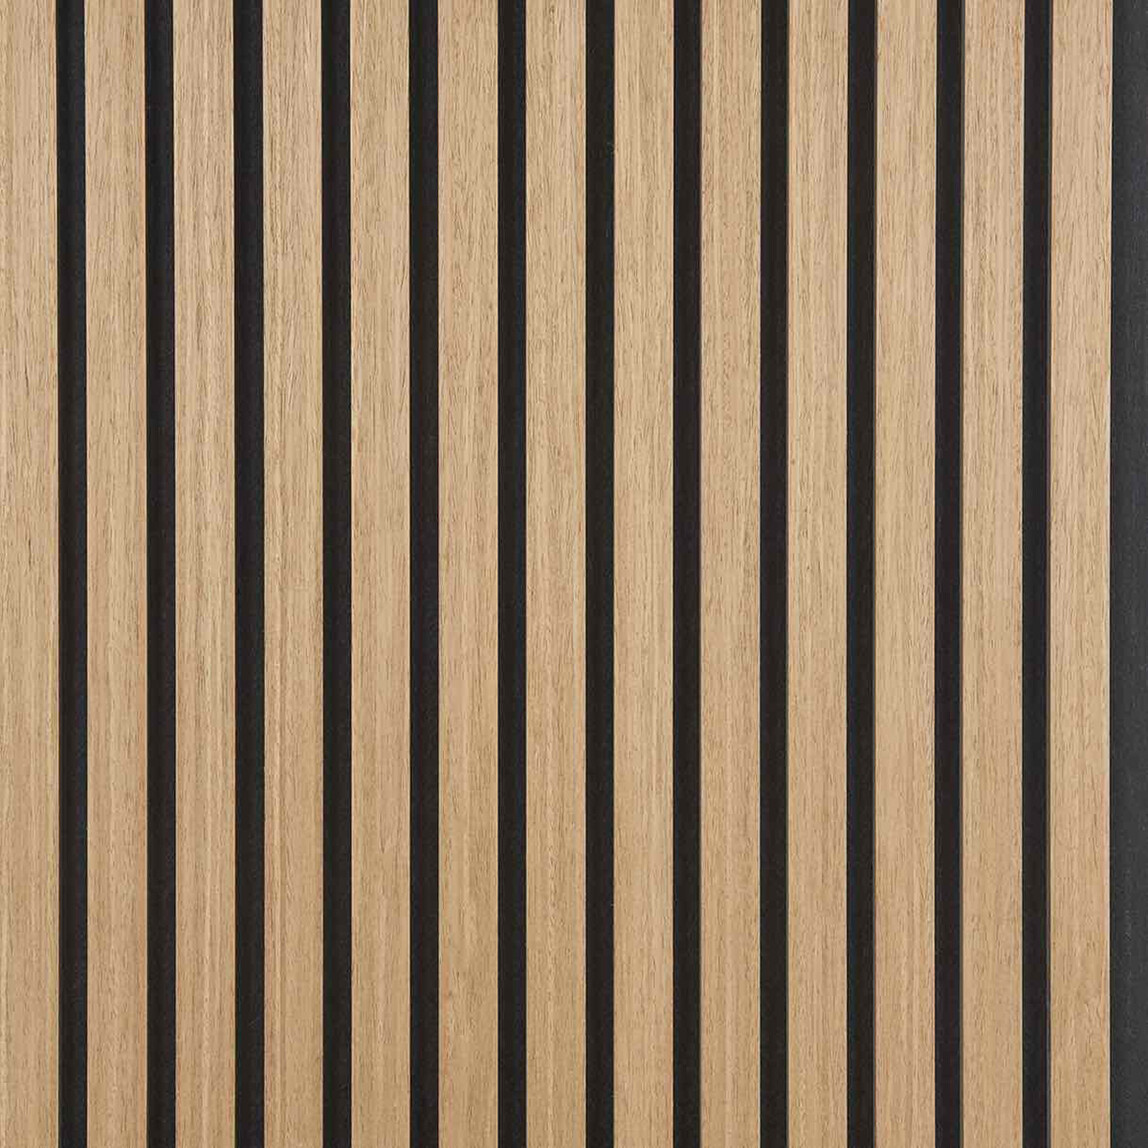    Quanti Dikdörtgen Akustik Duvar Paneli Yağlı Meşe 52x244x1,8 cm 